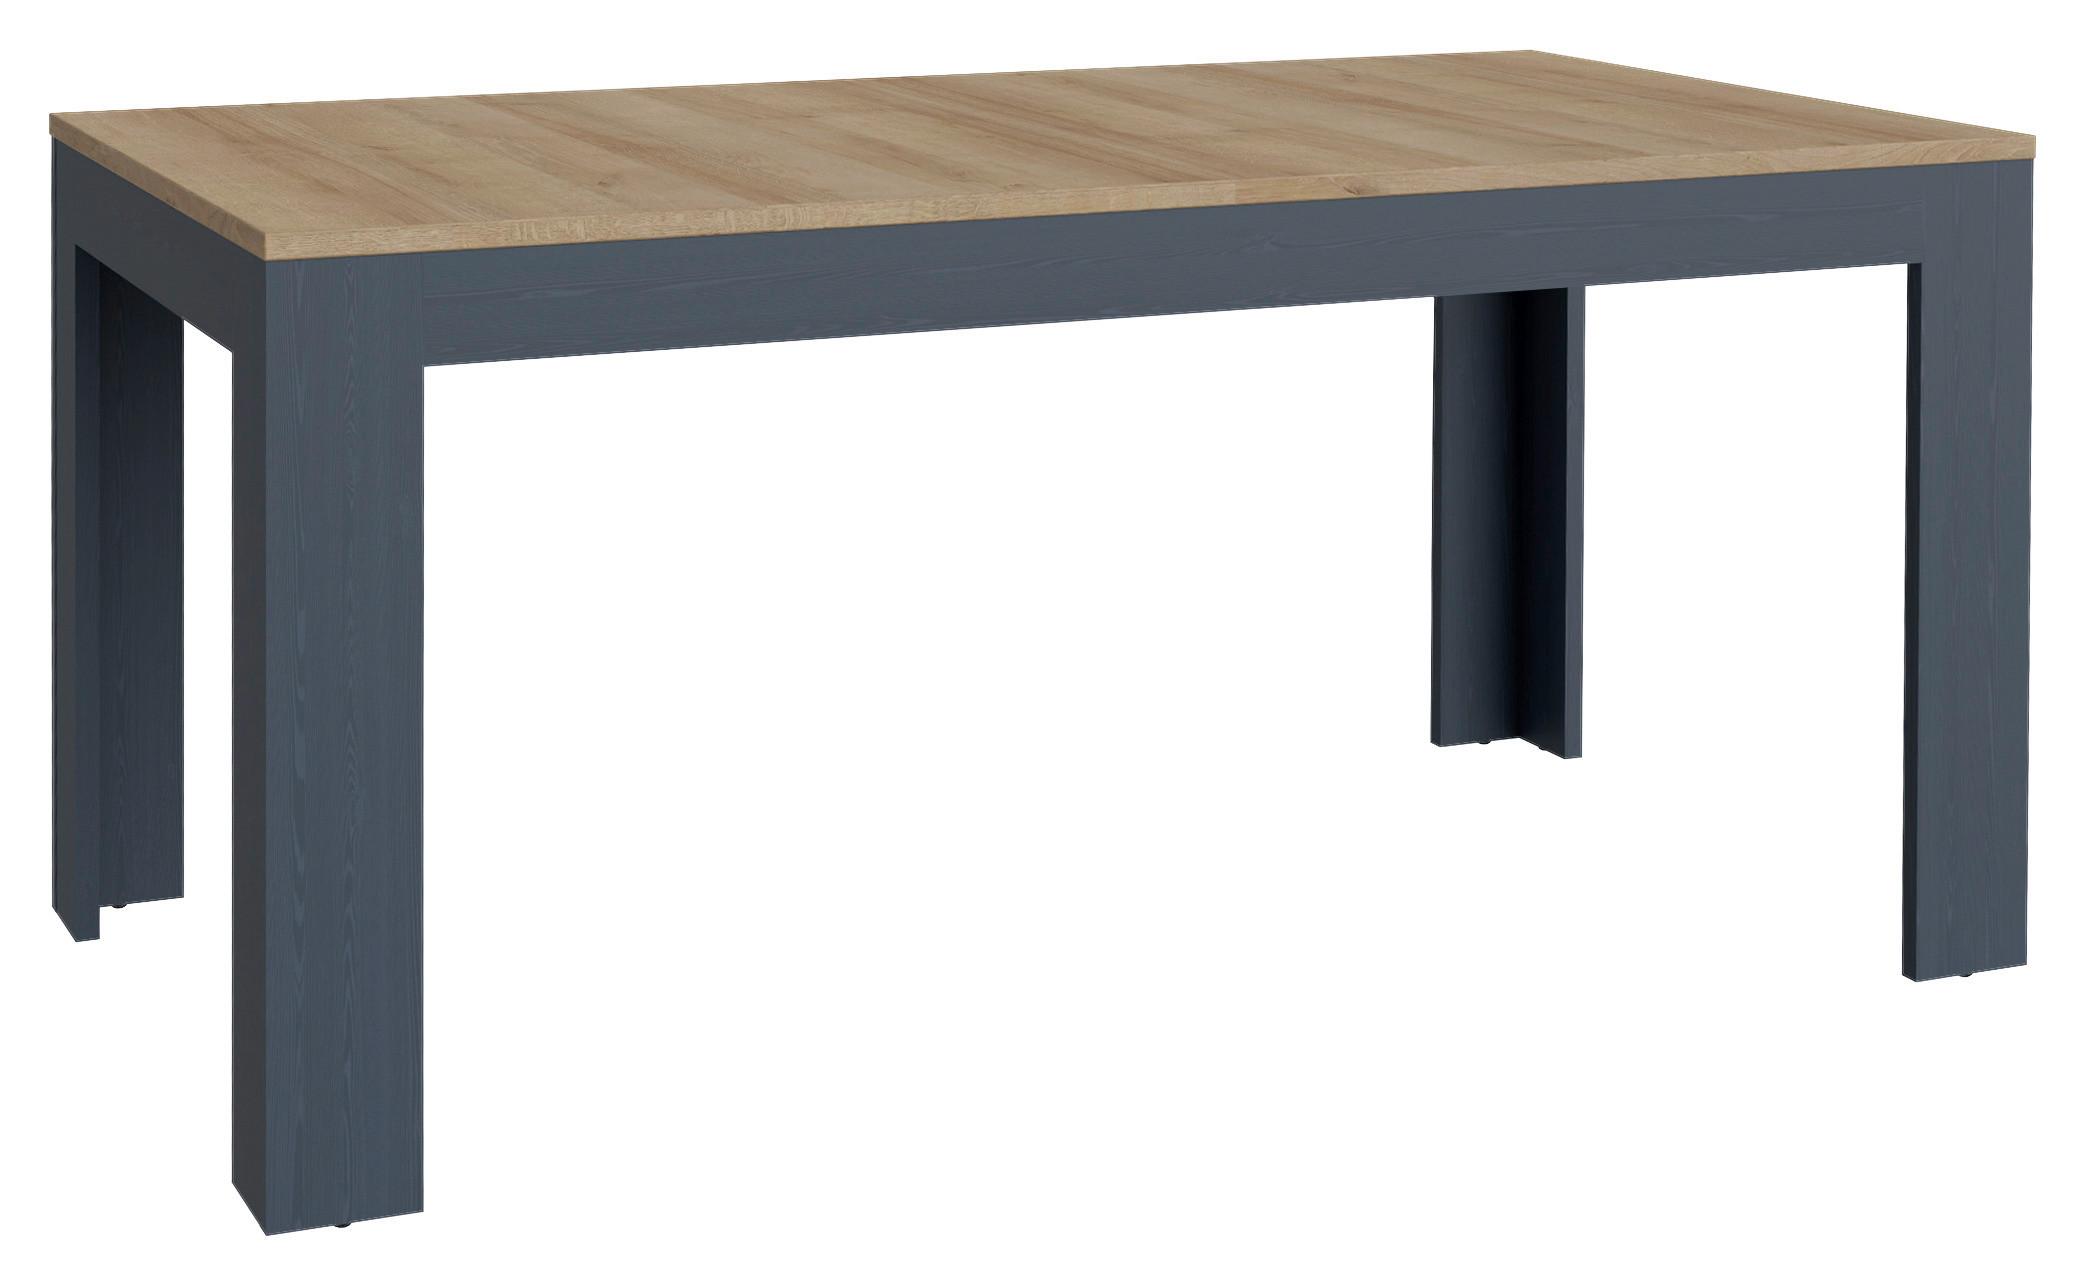 Výsuvný Stůl Bohol - modrá/barvy dubu, Konvenční, kompozitní dřevo (160-206,6/78,2/90cm) - Modern Living